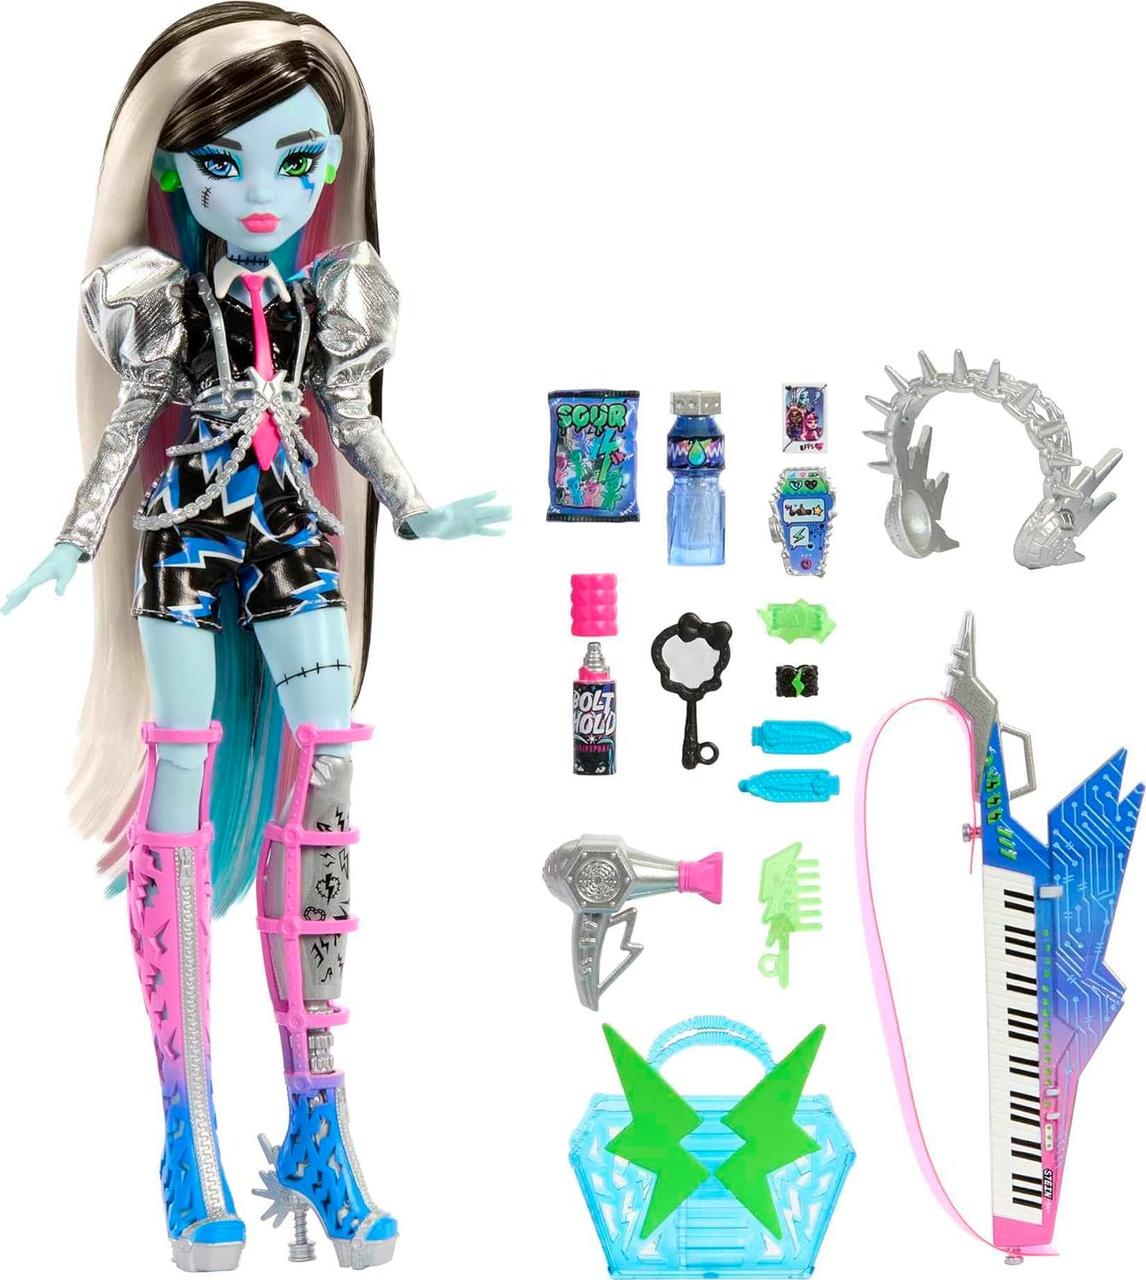 Лялька монстер хай Френки рокер Monster High Doll, Amped Up Frankie Stein Rockstar